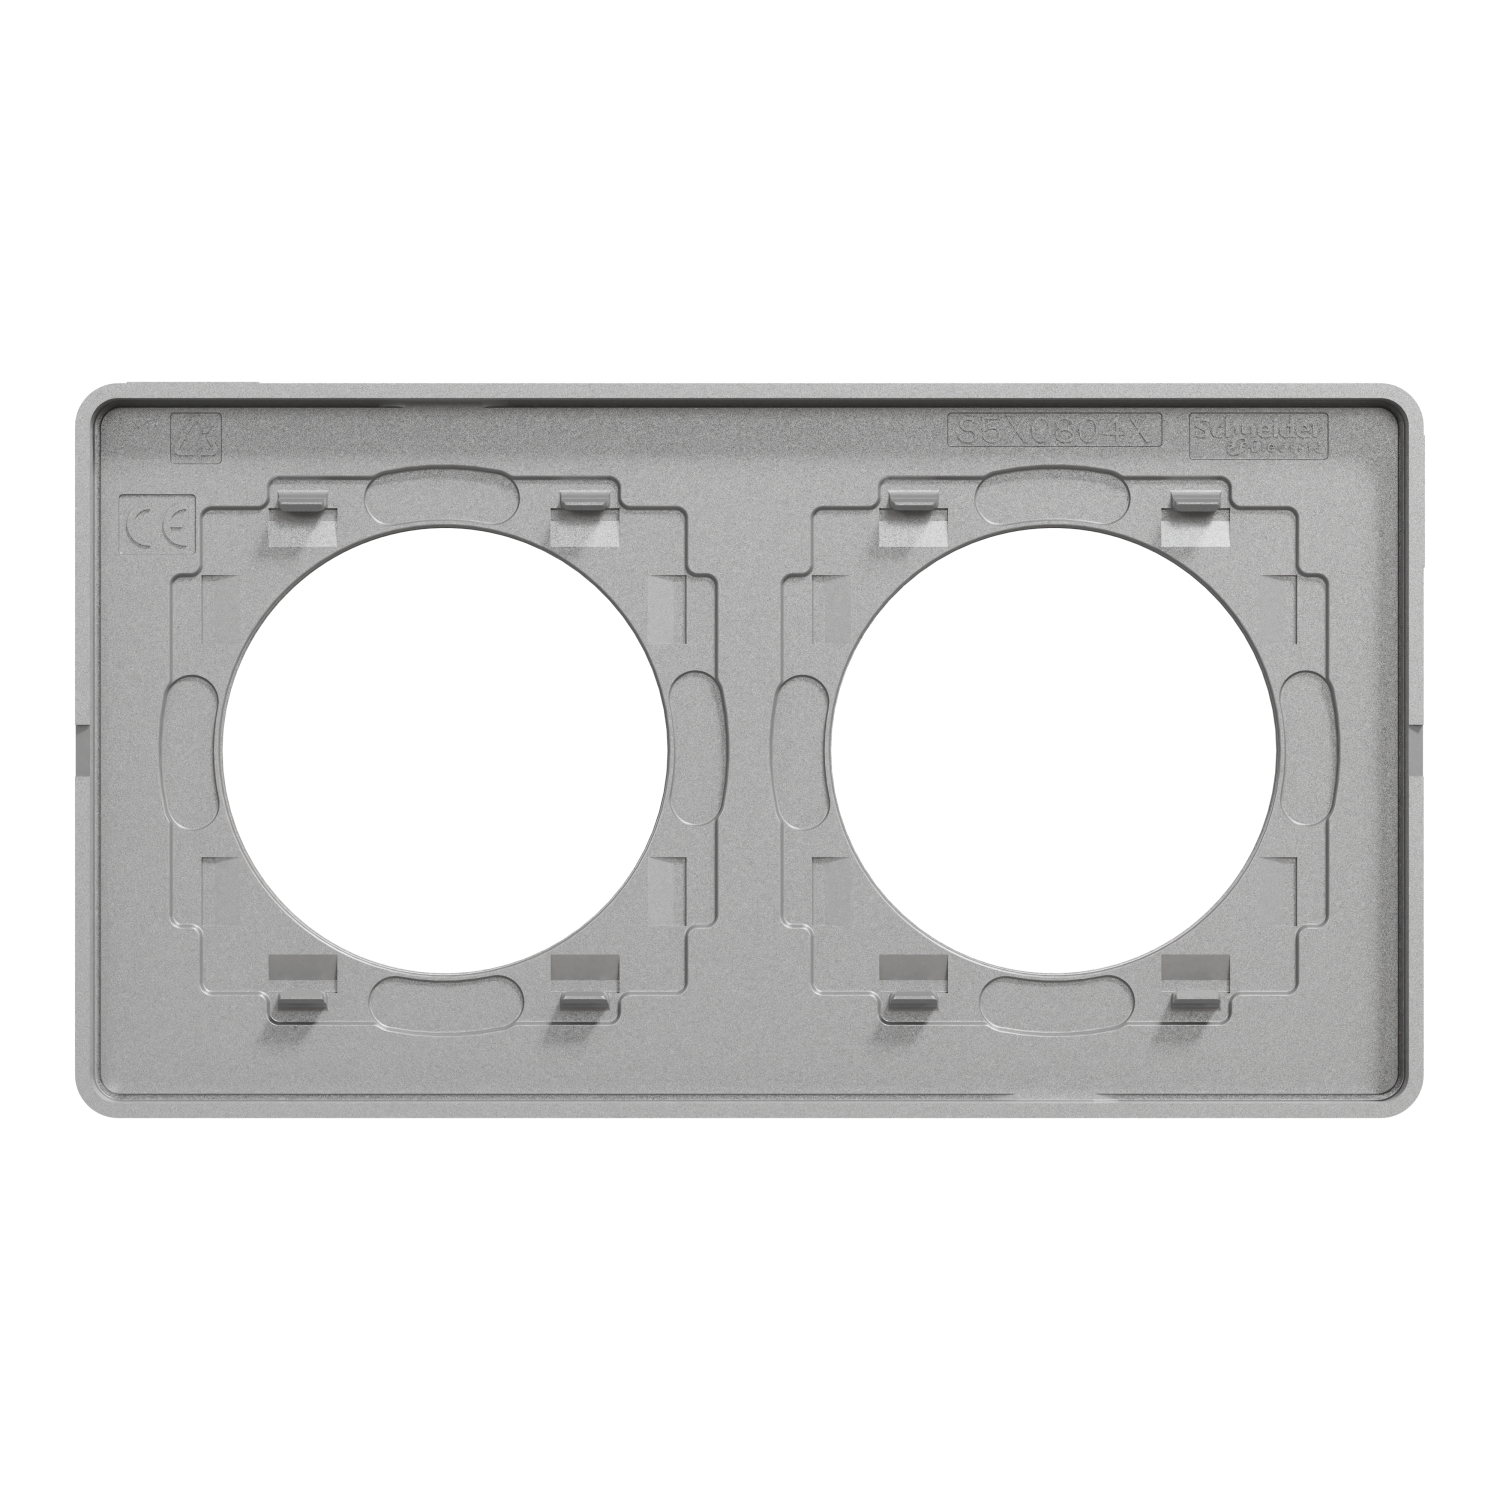 Schneider - Plaque 2 poste Aluminium Odace Touch - Finition Ardoise avec liseré alu - Réf : S530804V